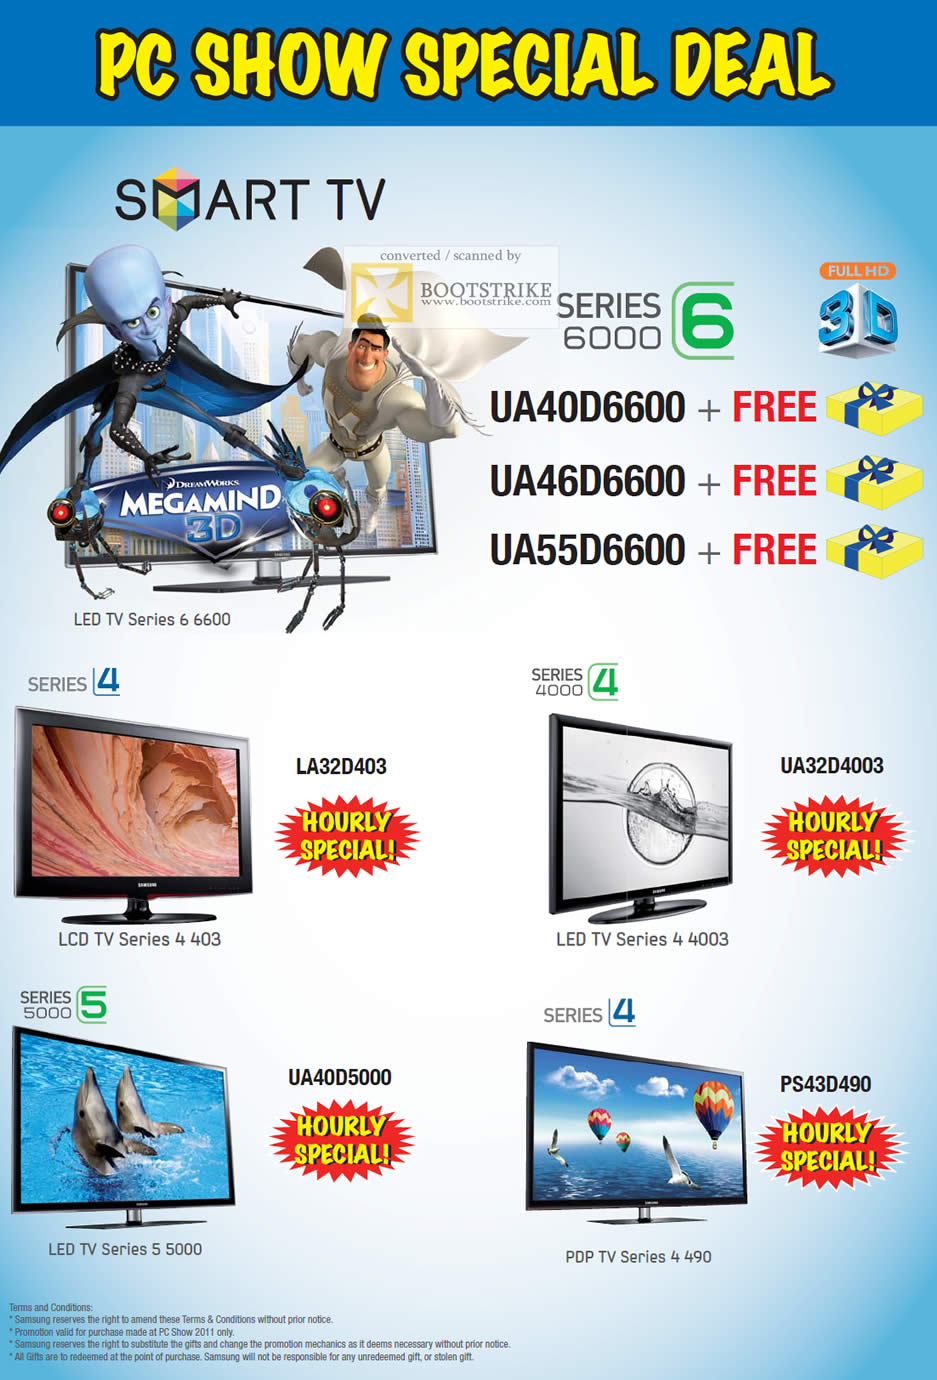 PC Show 2011 price list image brochure of Samsung Mega Discount Smart TV Series 6 UA40D6600 UA46D6600 UA55D6600 LA32D403 UA32D4003 UA40D5000 PS43D490